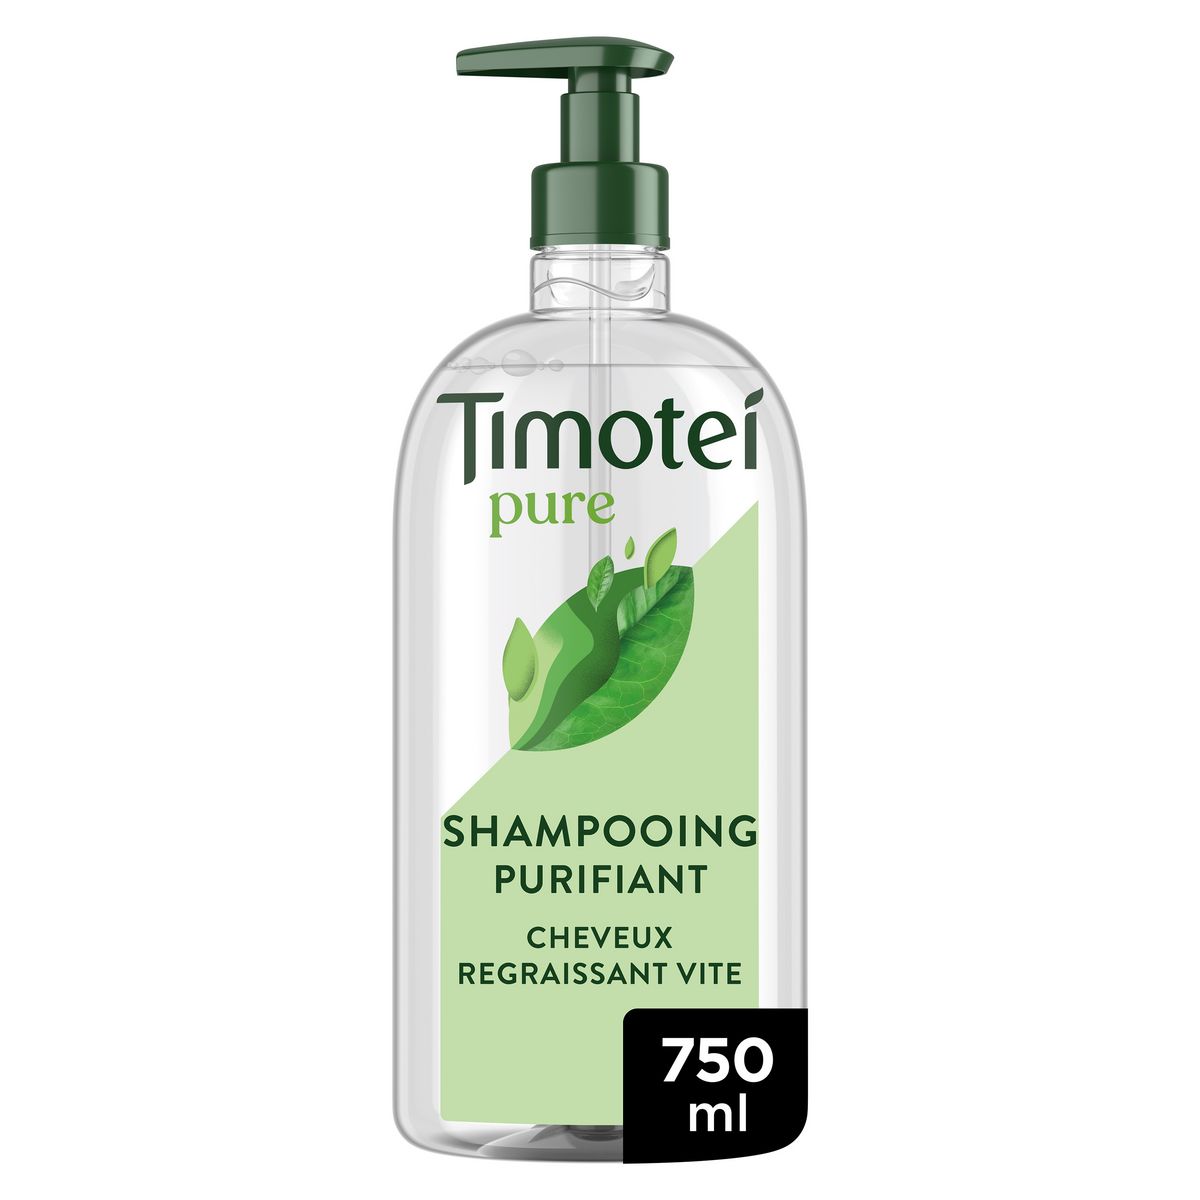 TIMOTEI Pure Shampooing purifiant thé vert cheveux regraissant vite 750ml